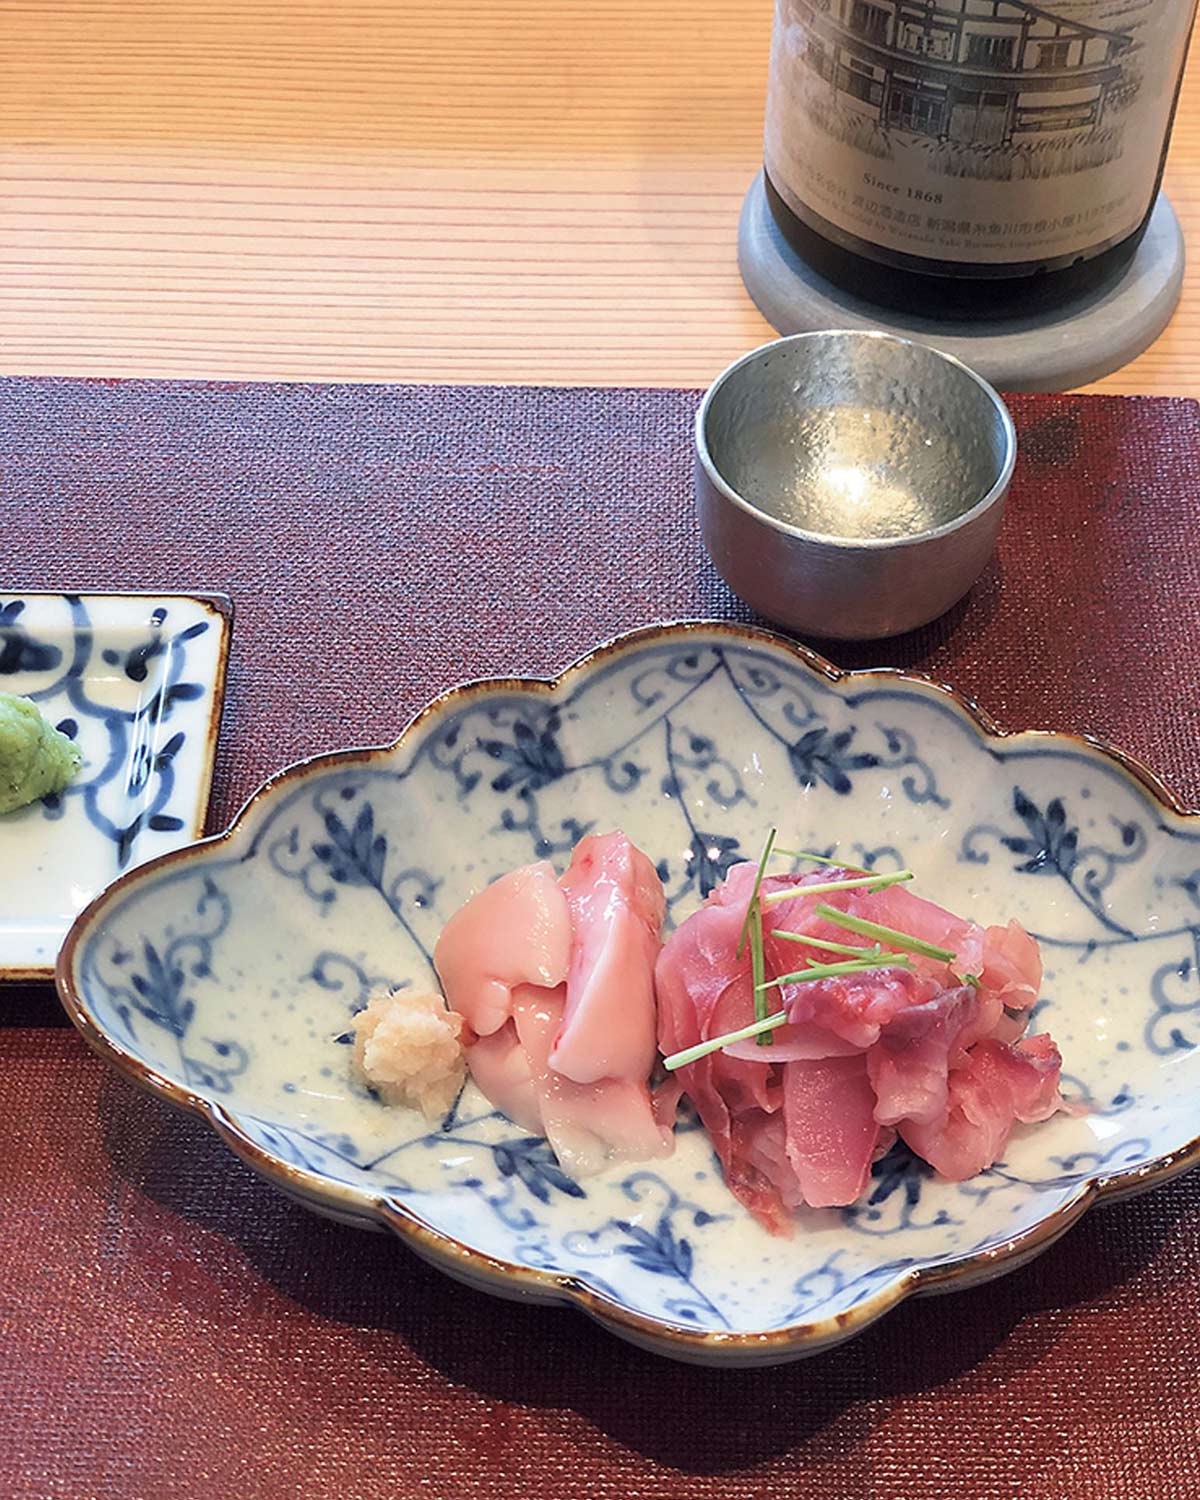 美食のフロンティアとして今、国内外から注目される新潟県。